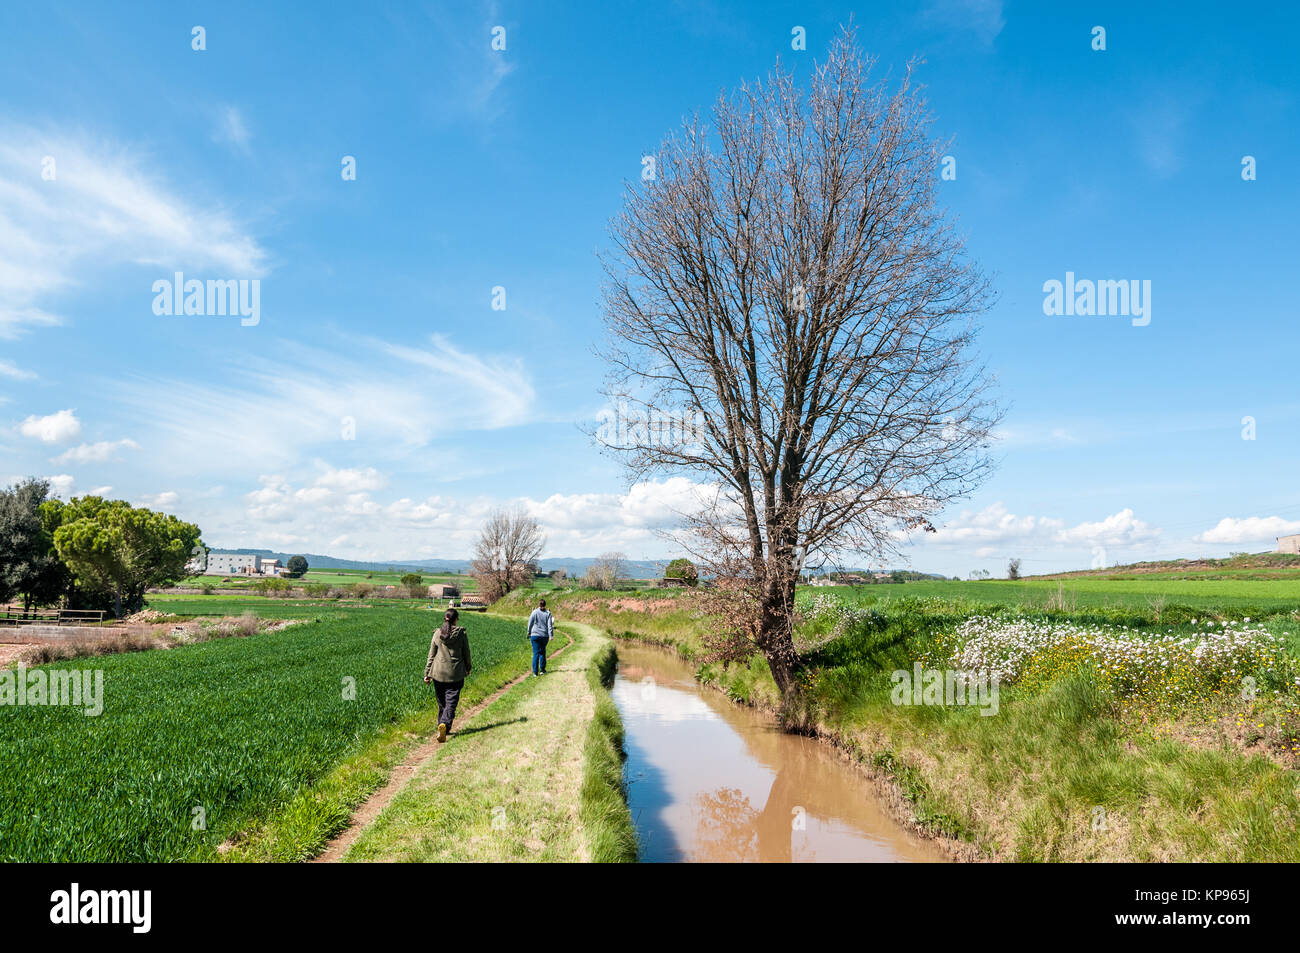 Paisaje con un canal de agua de color marrón, agua y un árbol deshojado y dos mujeres que caminan, Santpedor, Cataluña, España Foto de stock